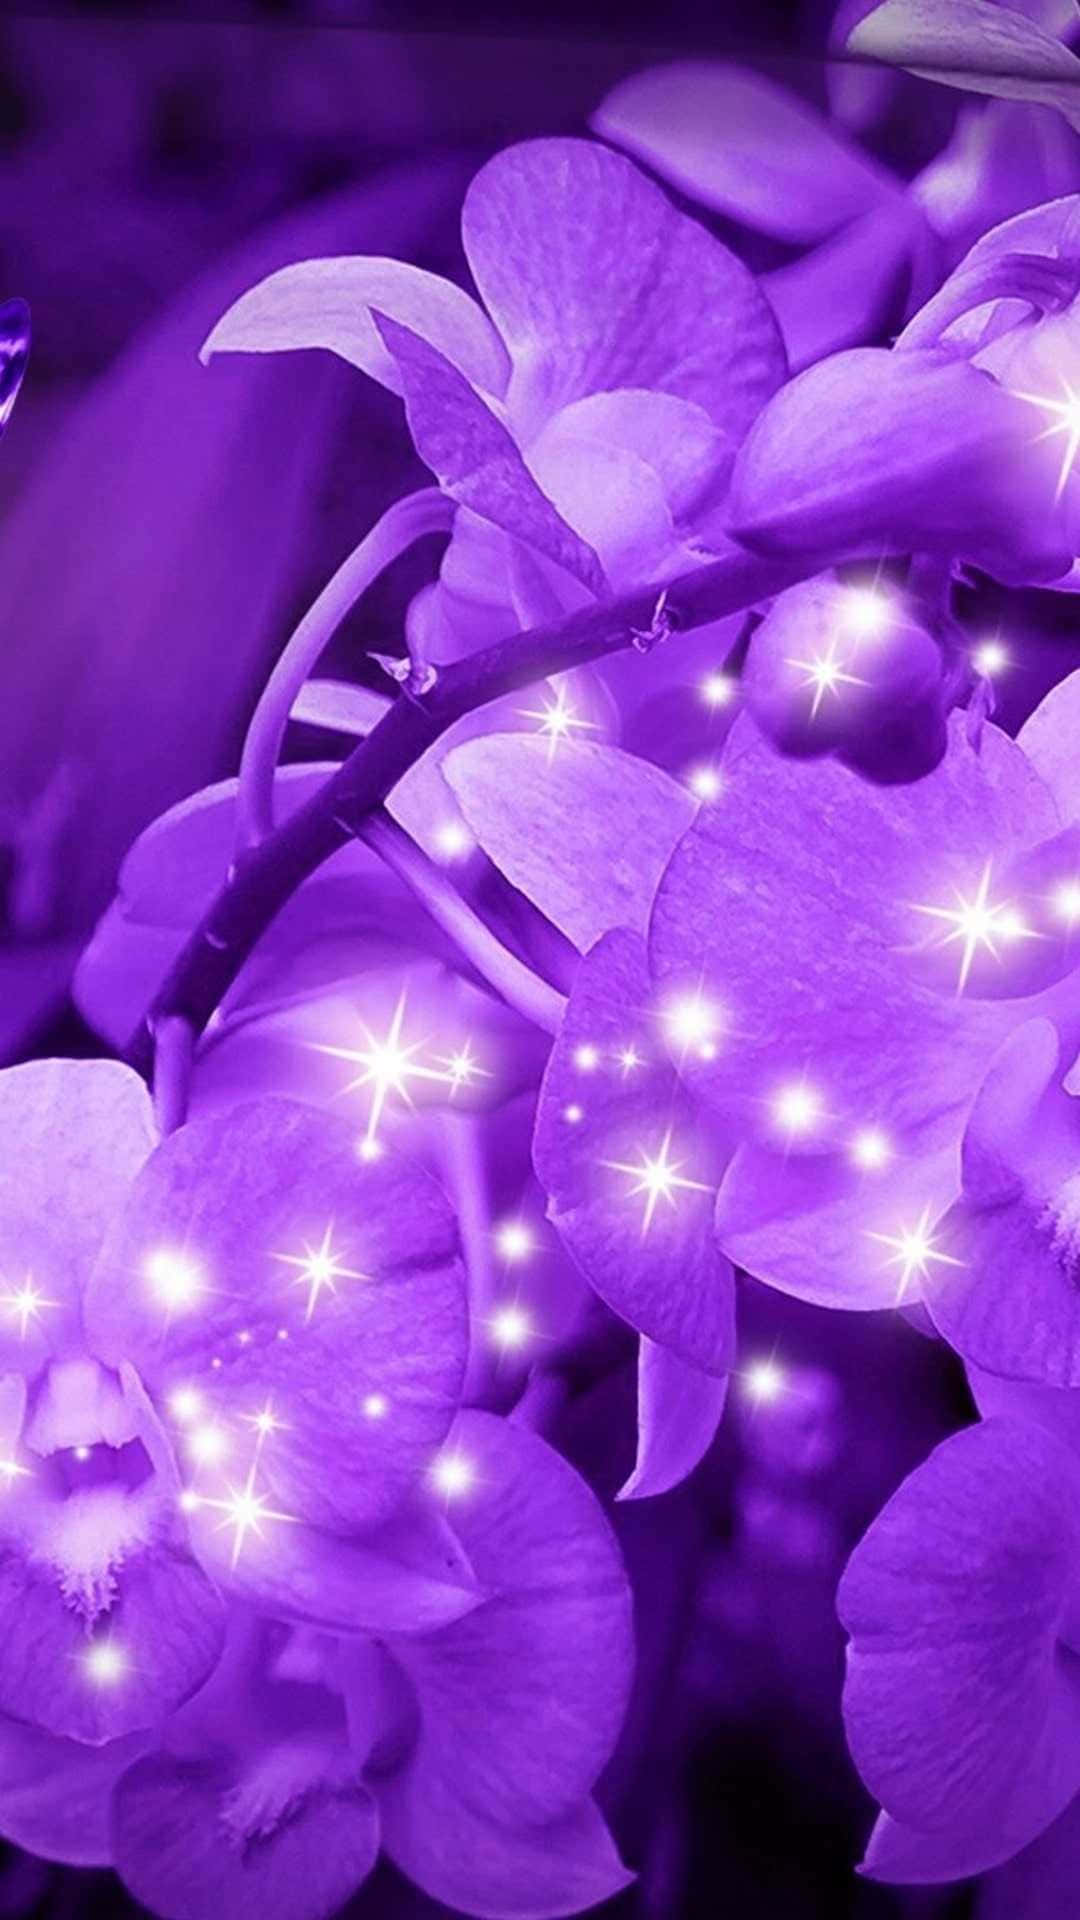 "The beauty of a purple flower"